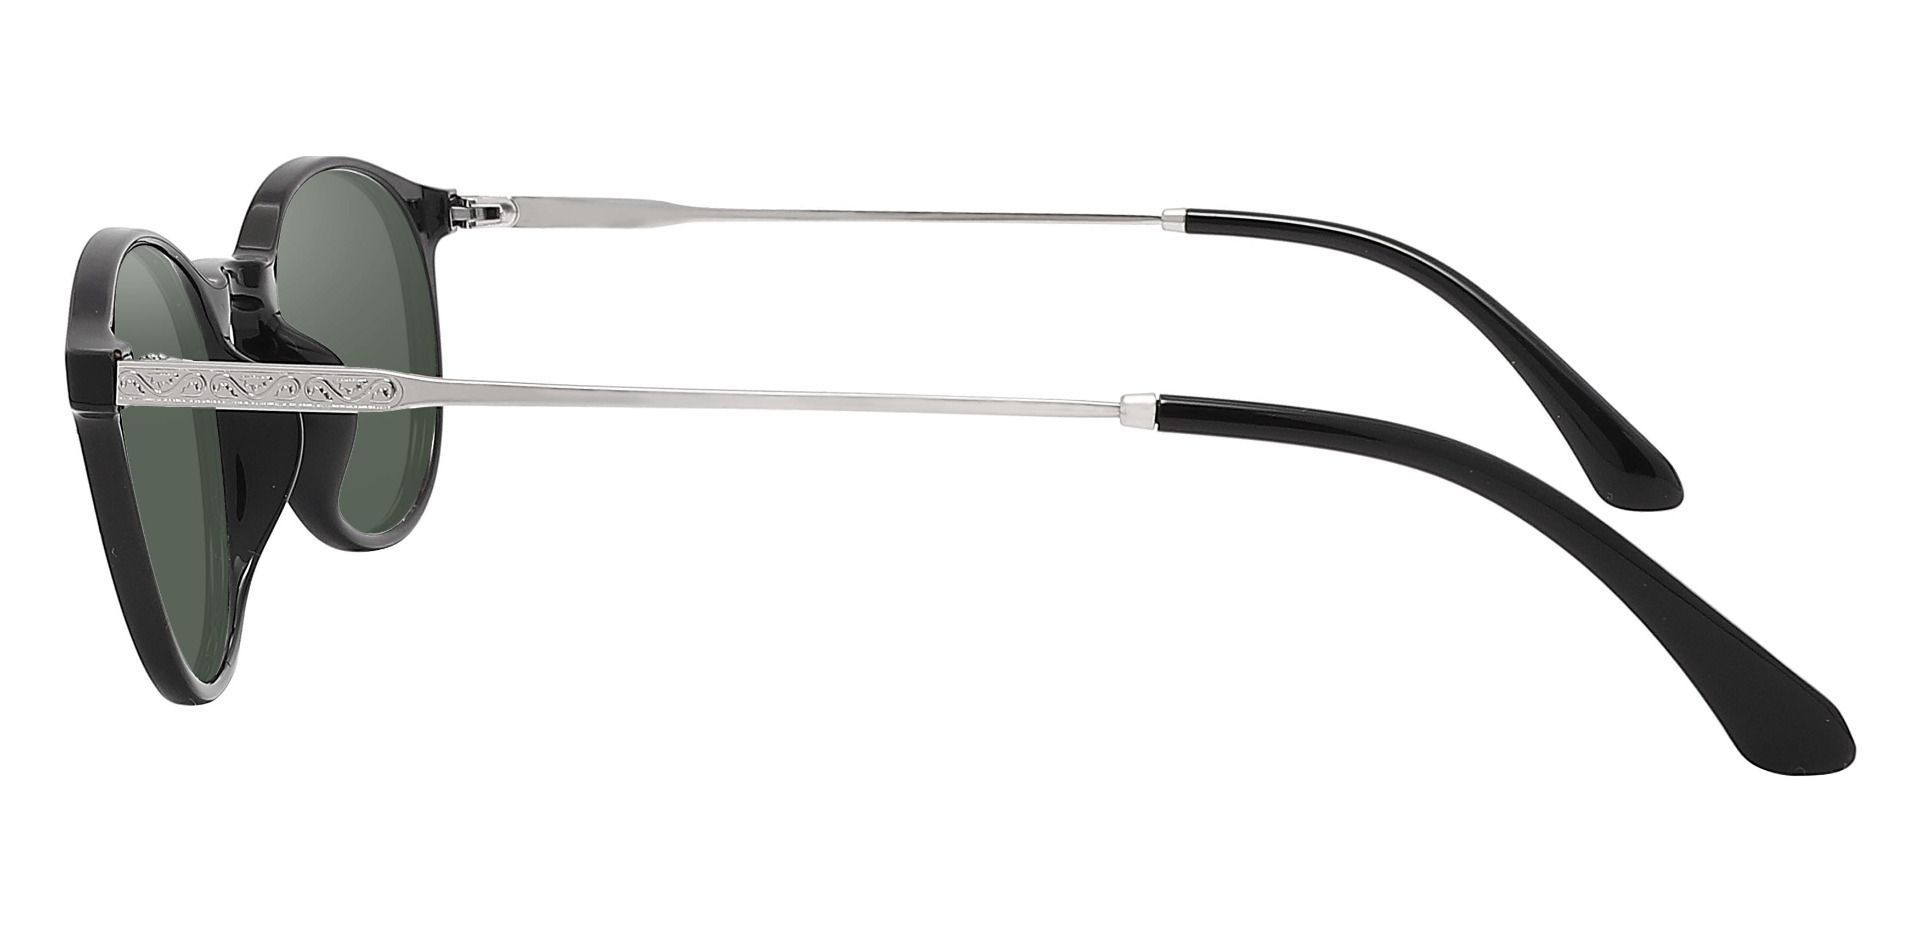 Felton Oval Prescription Sunglasses - Black Frame With Green Lenses